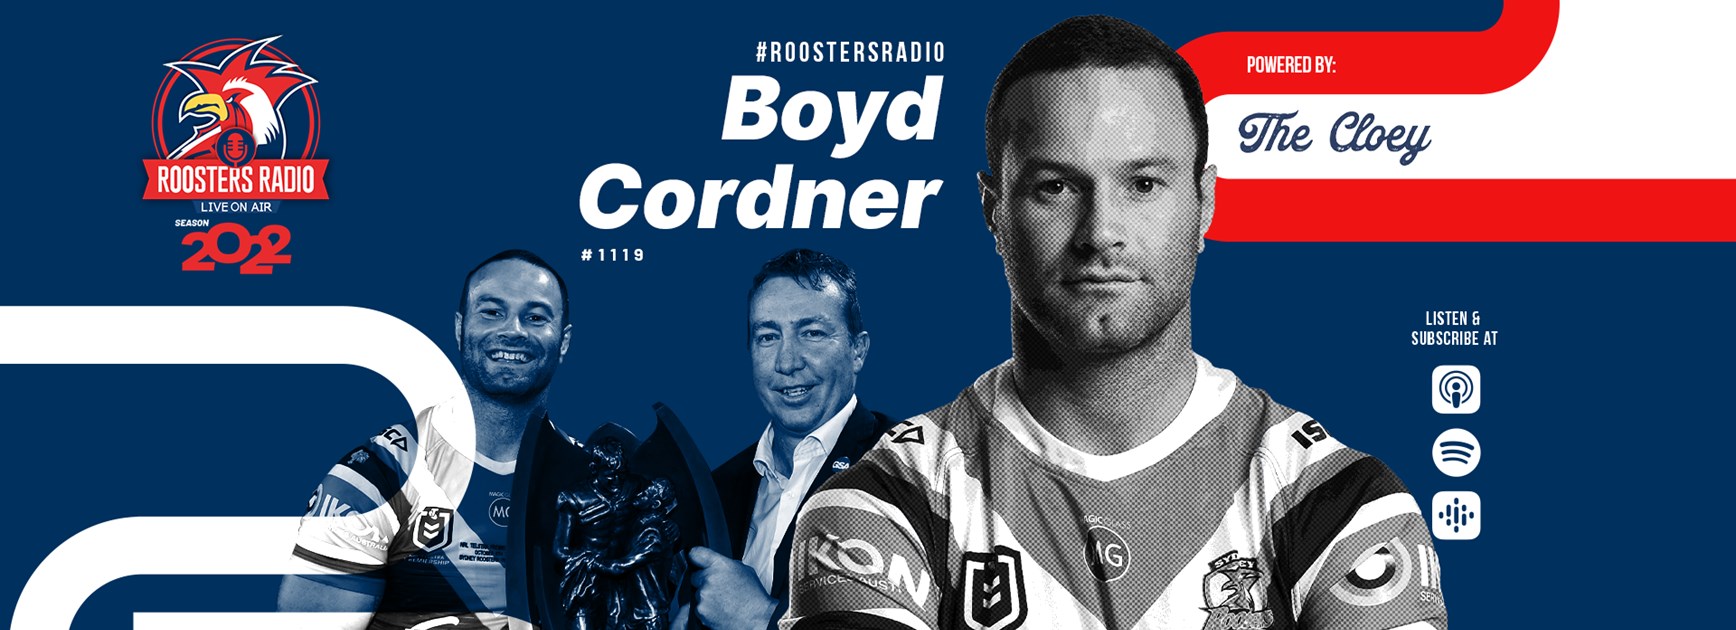 Roosters Radio Ep 133: Boyd Cordner